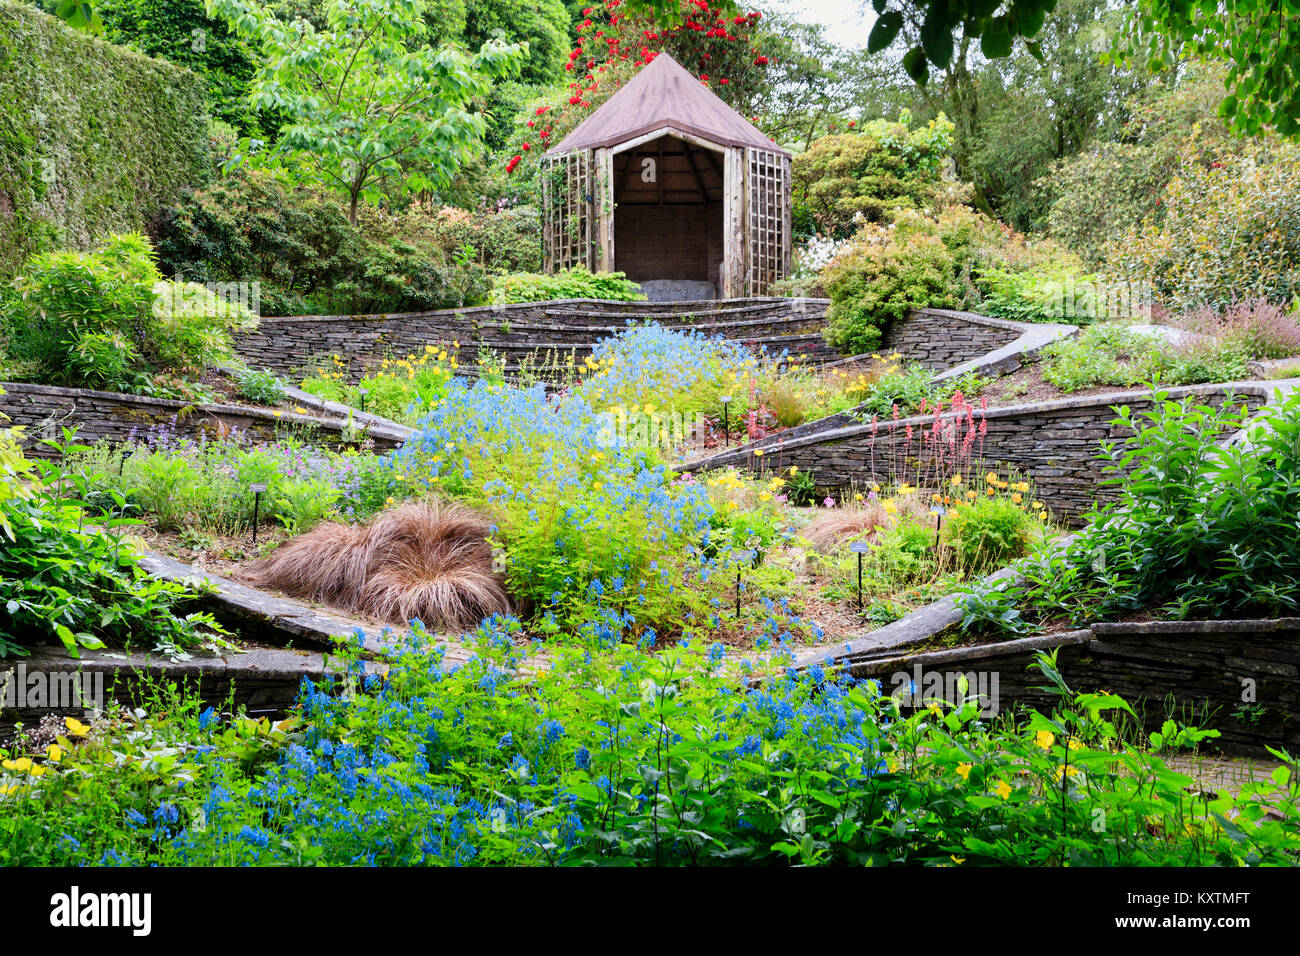 Tarda primavera vista del giardino ovali presso il Garden House, Buckland Monachorum, Devon, Regno Unito, con un fiume azzurro di Corydalis 'Tory Mp' in esecuzione attraverso Foto Stock